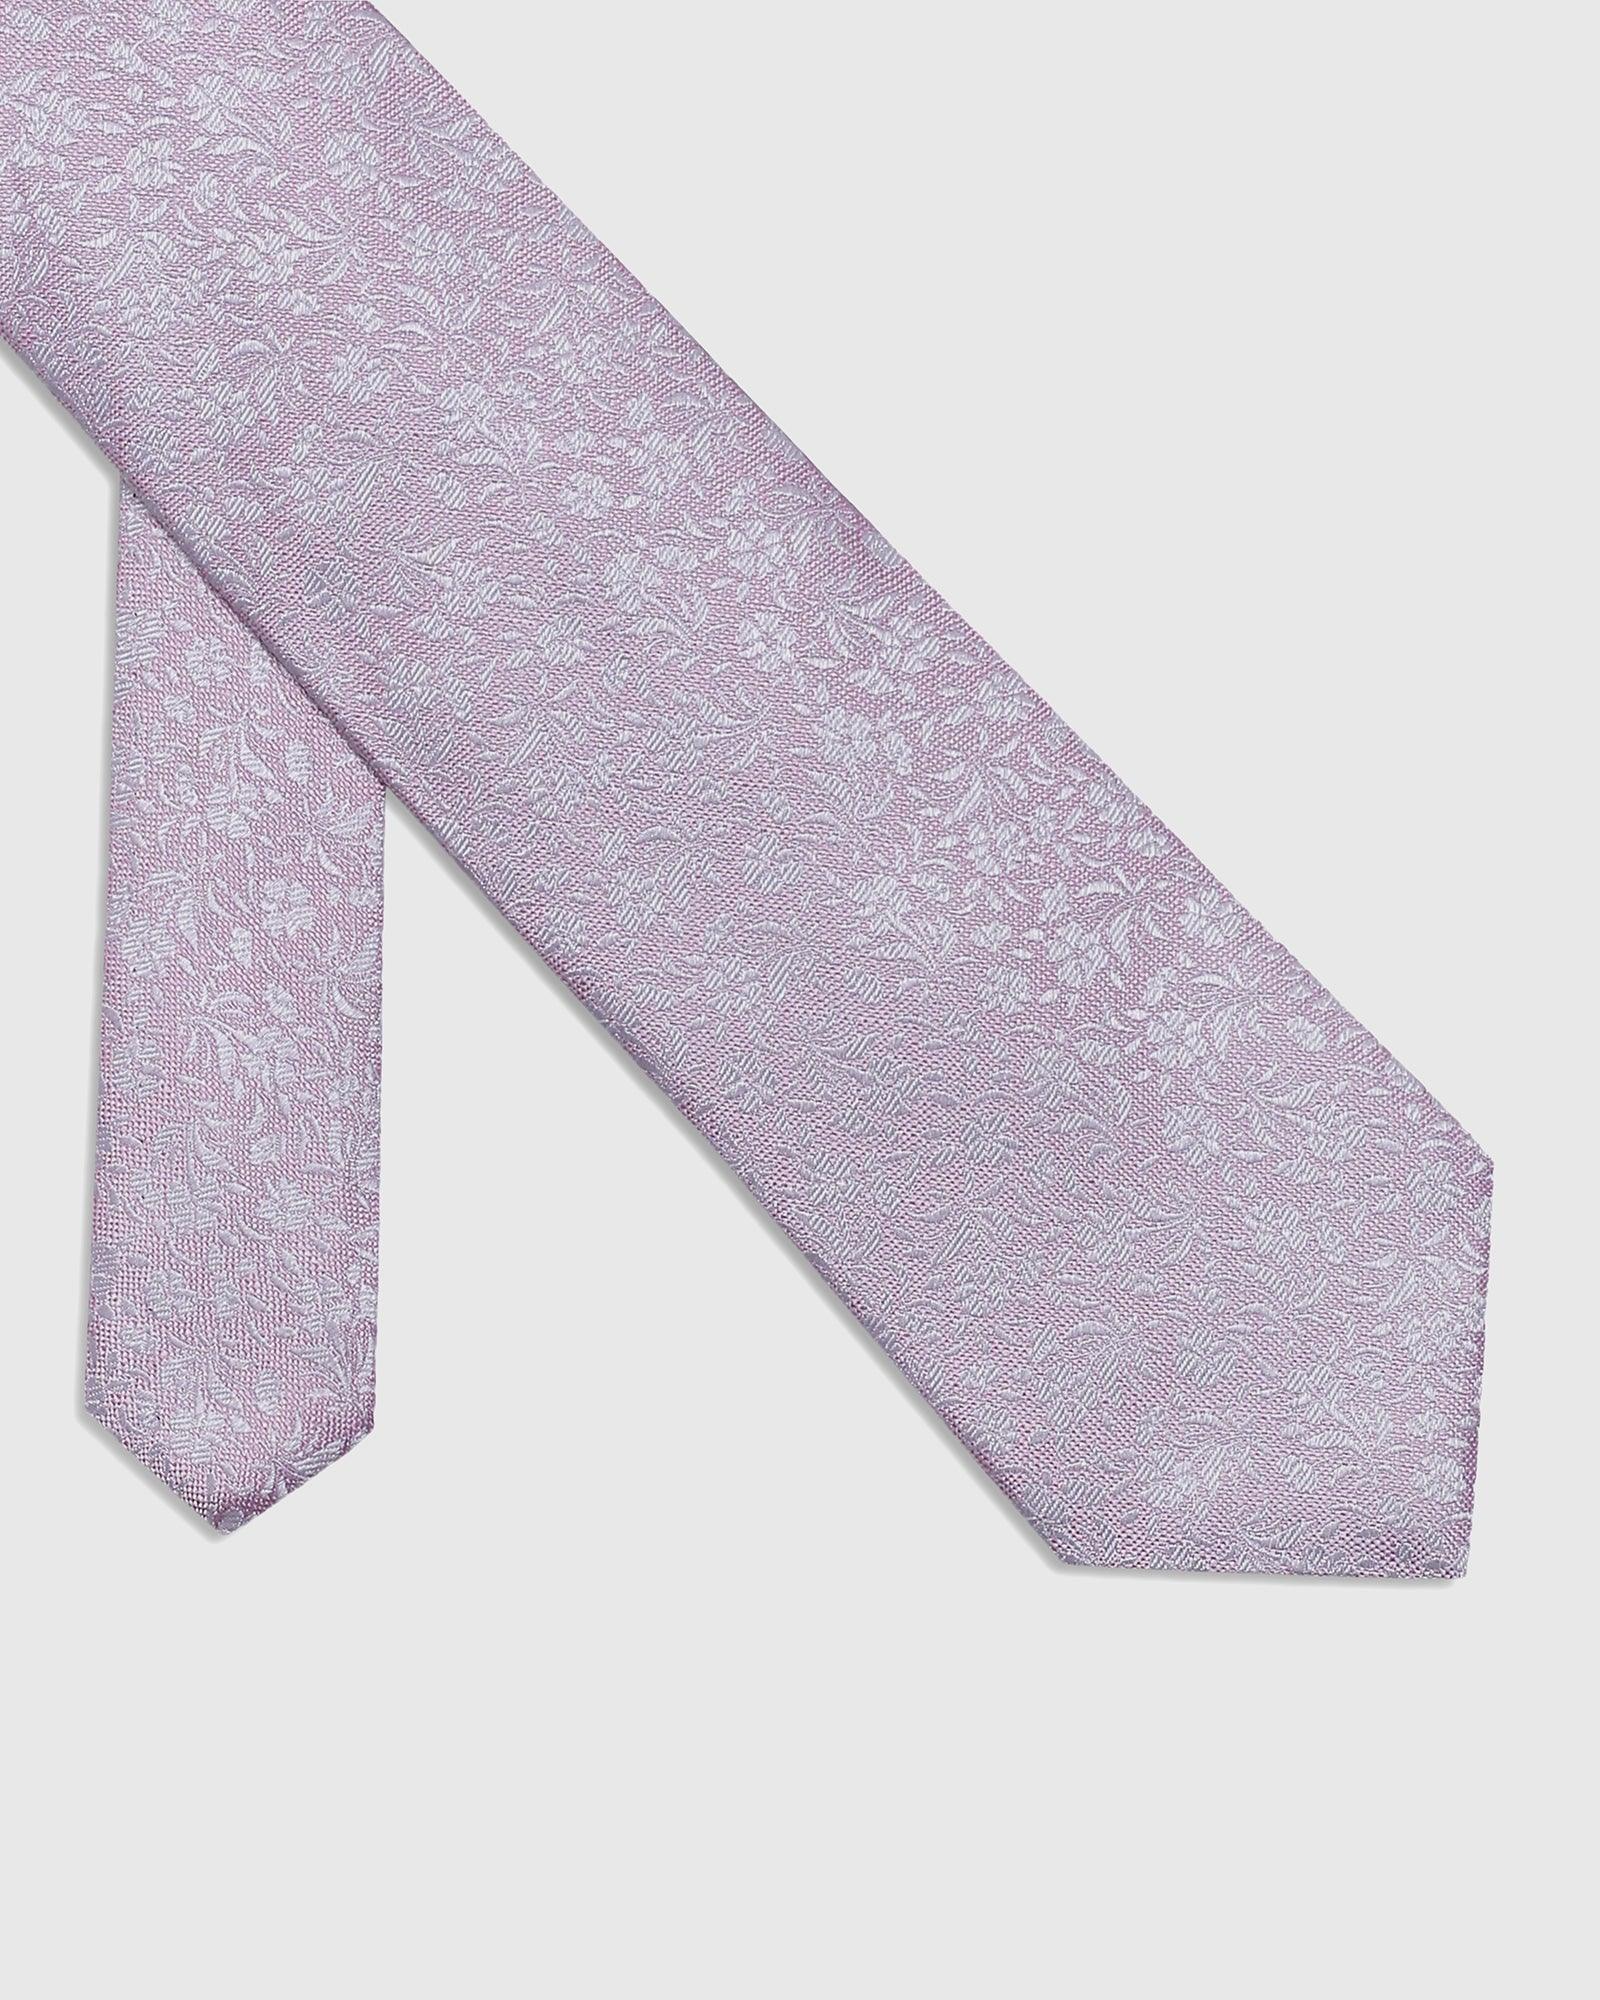 Silk Light Pink Printed Tie - Santo